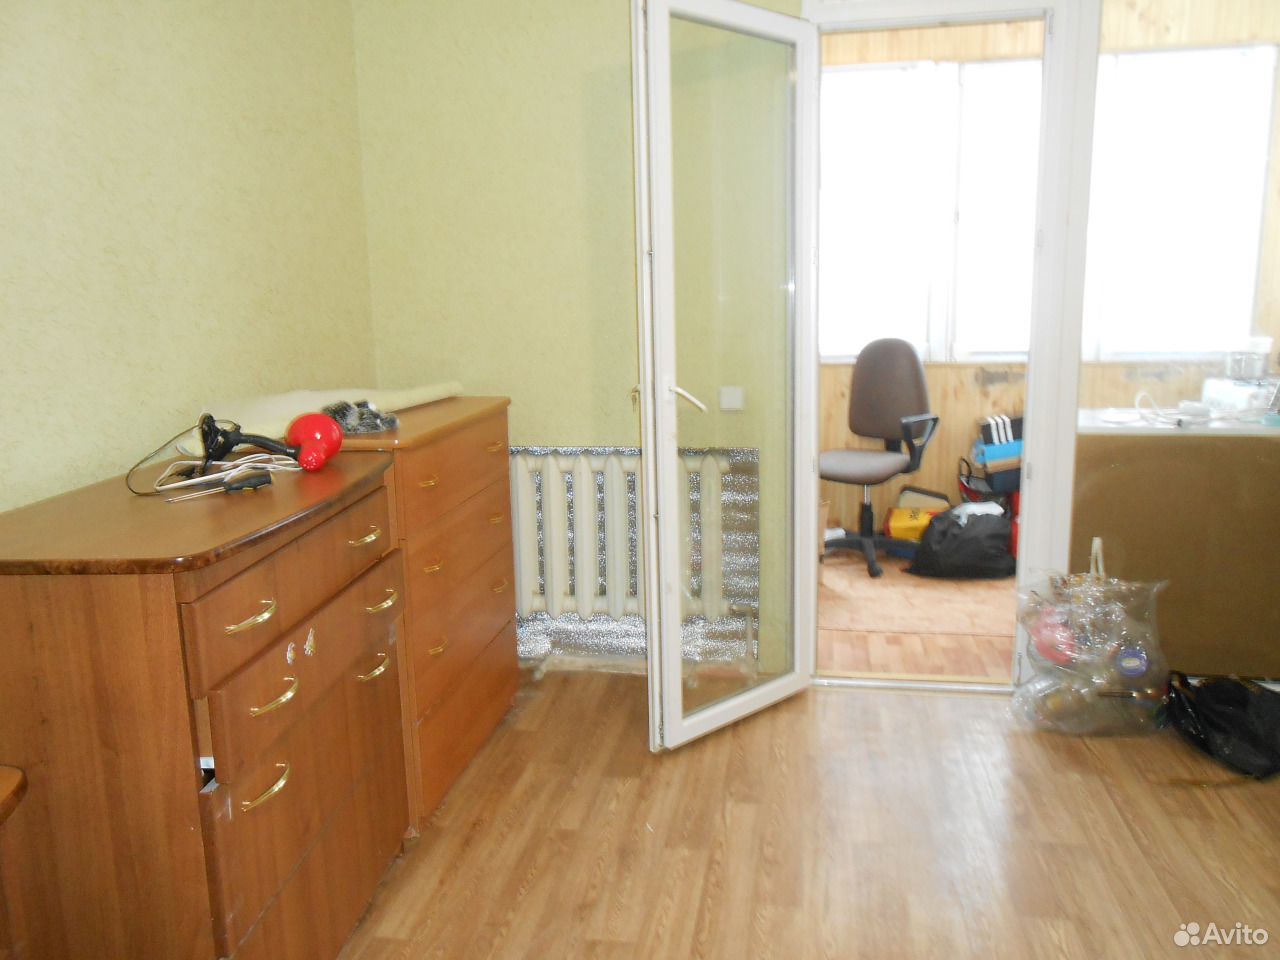 Инвалид 2 группы ипотека какая квартира-студия в Севастополе. Купить квартиру в Севастополе 1 комнатную. Продам квартиру Севастополь. Купить квартиру-студию в Балаклаве в Севастополе только первый этаж. Севастополь купить 1 комнатную вторичное